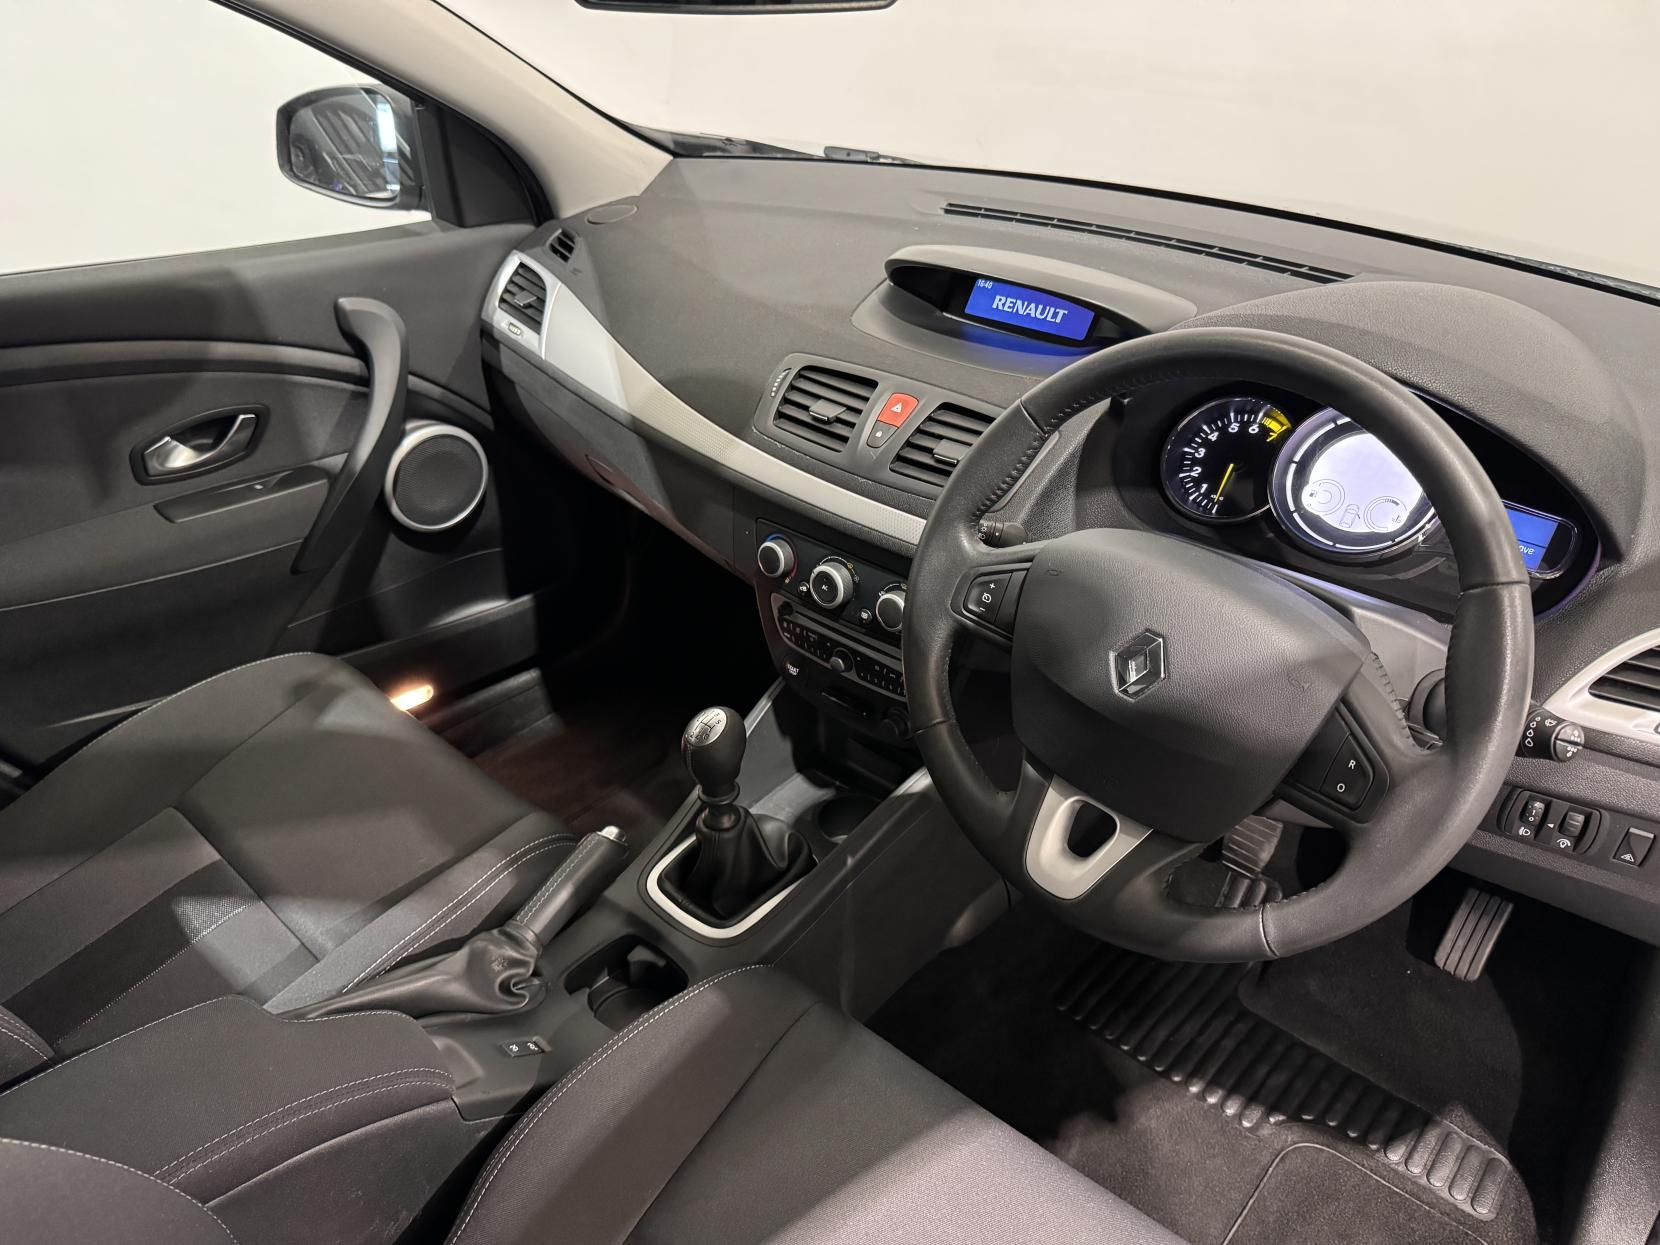 Renault Megane 1.6 16V Dynamique Hatchback 5dr Petrol Manual Euro 5 (110 ps)